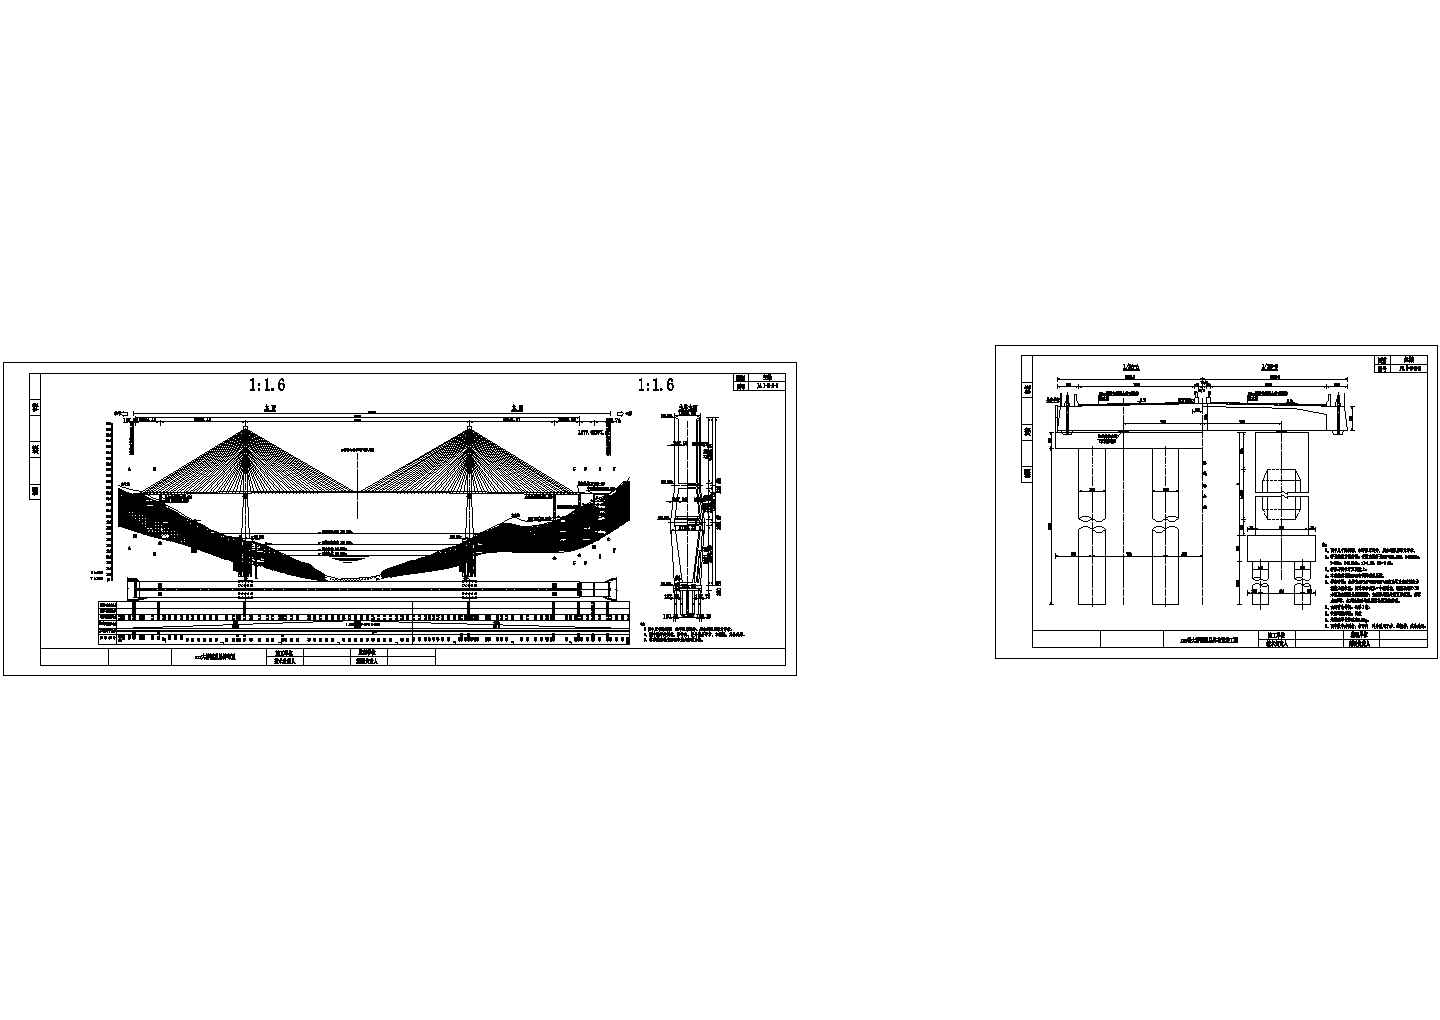 双塔双索面预应力混凝土斜拉桥桥型总体布置节点详图设计